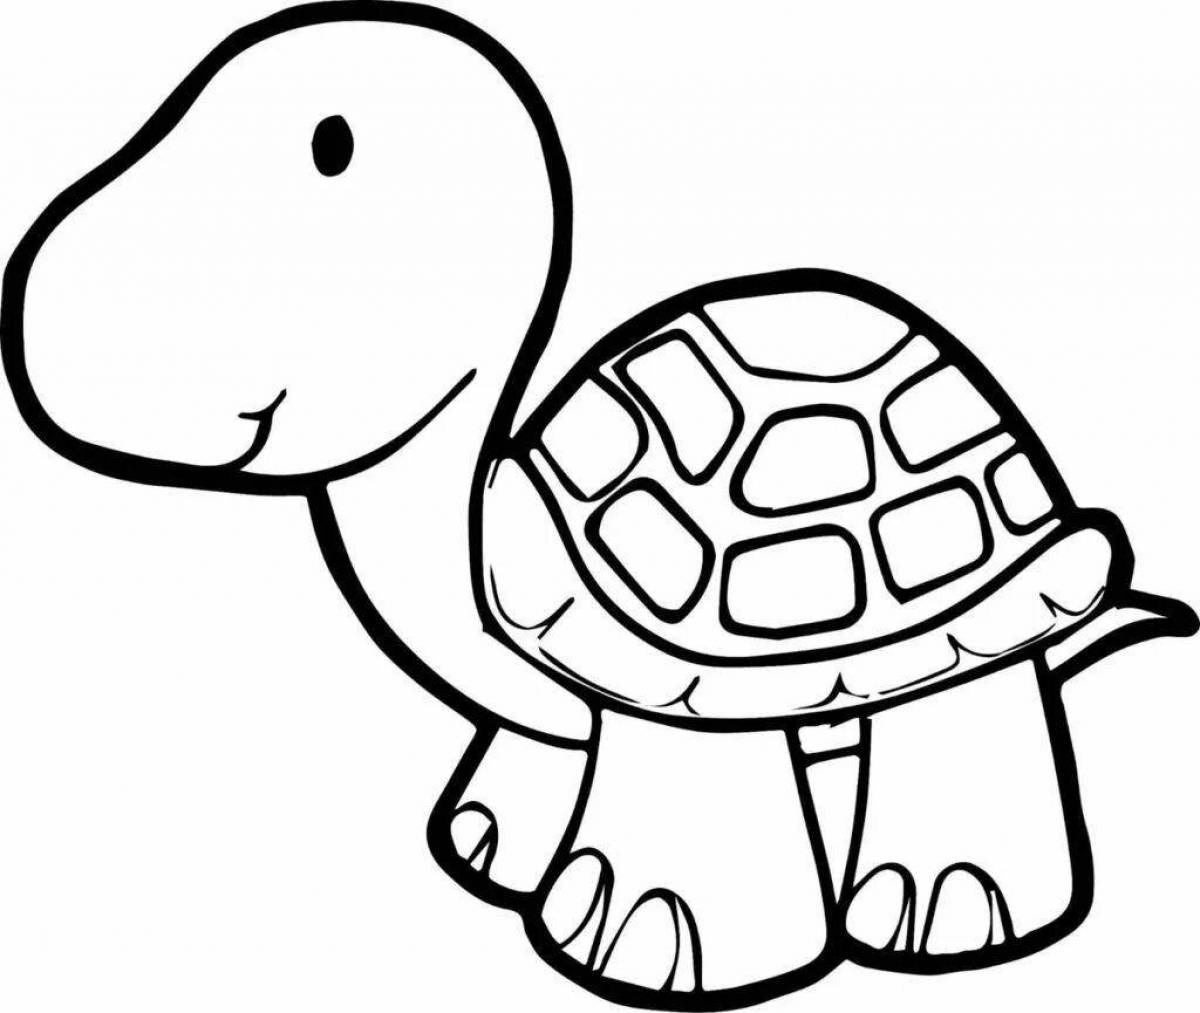 Веселая раскраска черепаха для детей